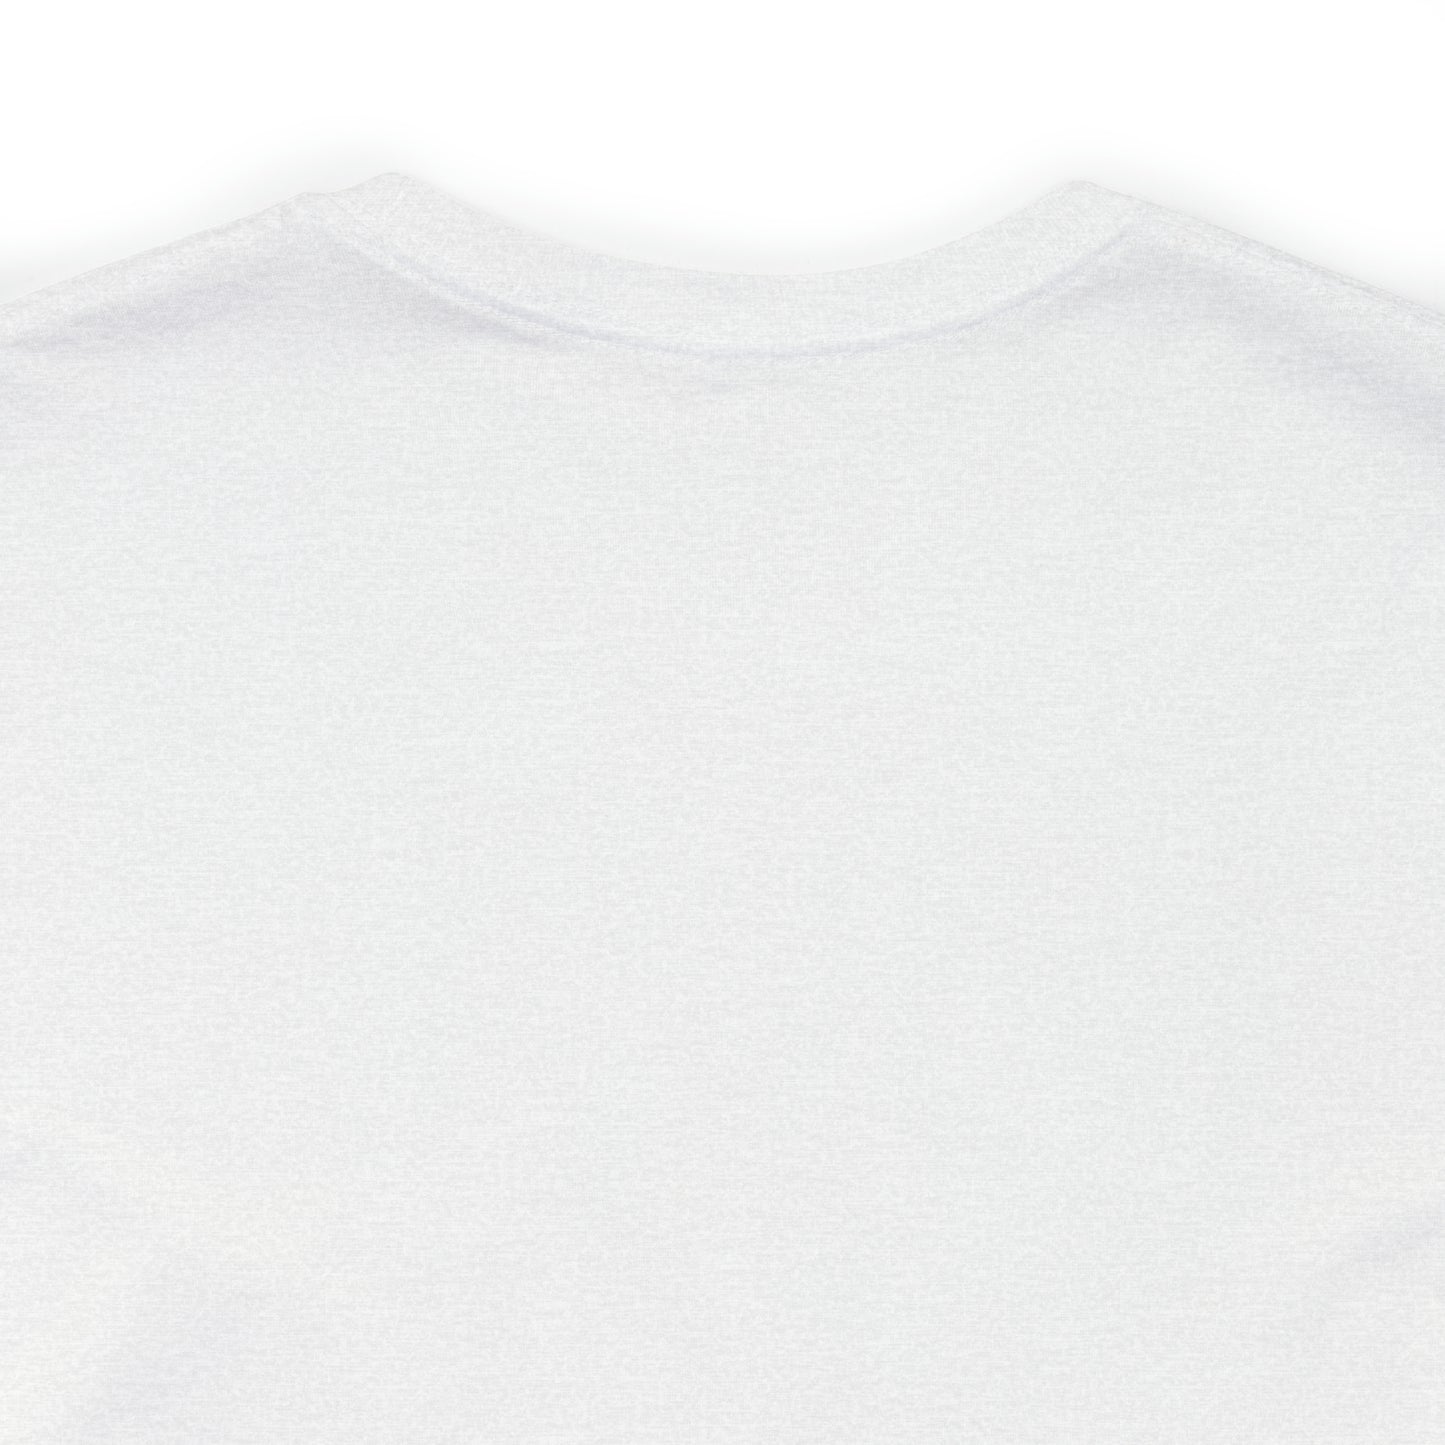 Lenox, Mass Pickleball Short Sleeve T-Shirt